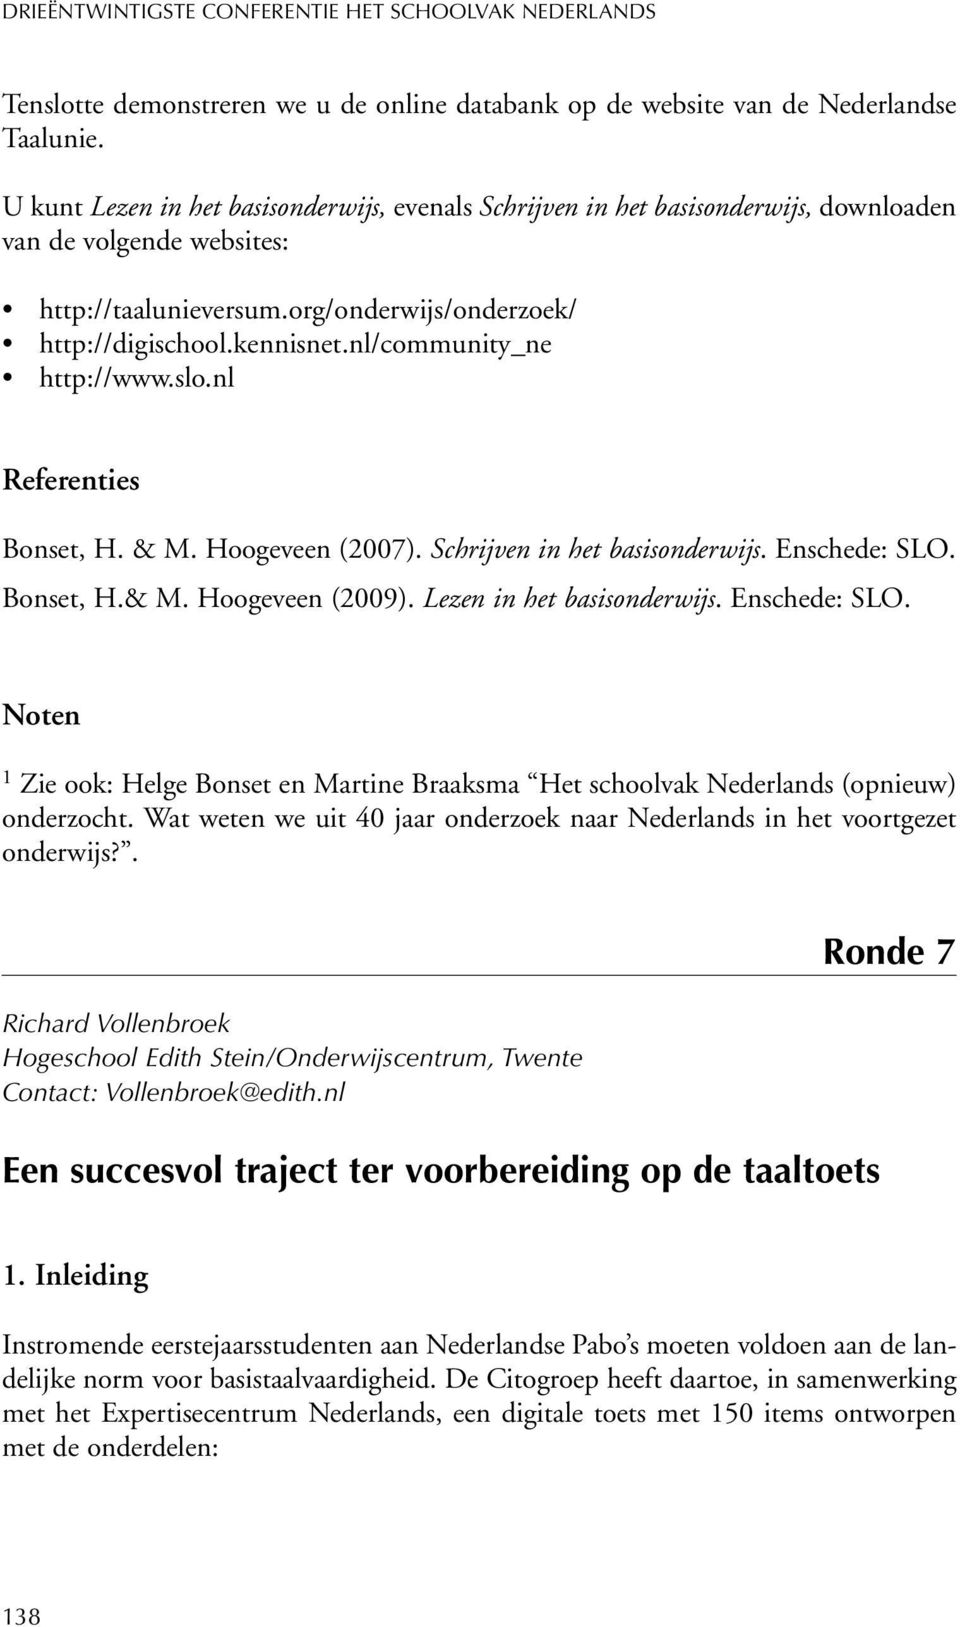 nl/community_ne http://www.slo.nl Referenties Bonset, H. & M. Hoogeveen (2007). Schrijven in het basisonderwijs. Enschede: SLO. Bonset, H.& M. Hoogeveen (2009). Lezen in het basisonderwijs.